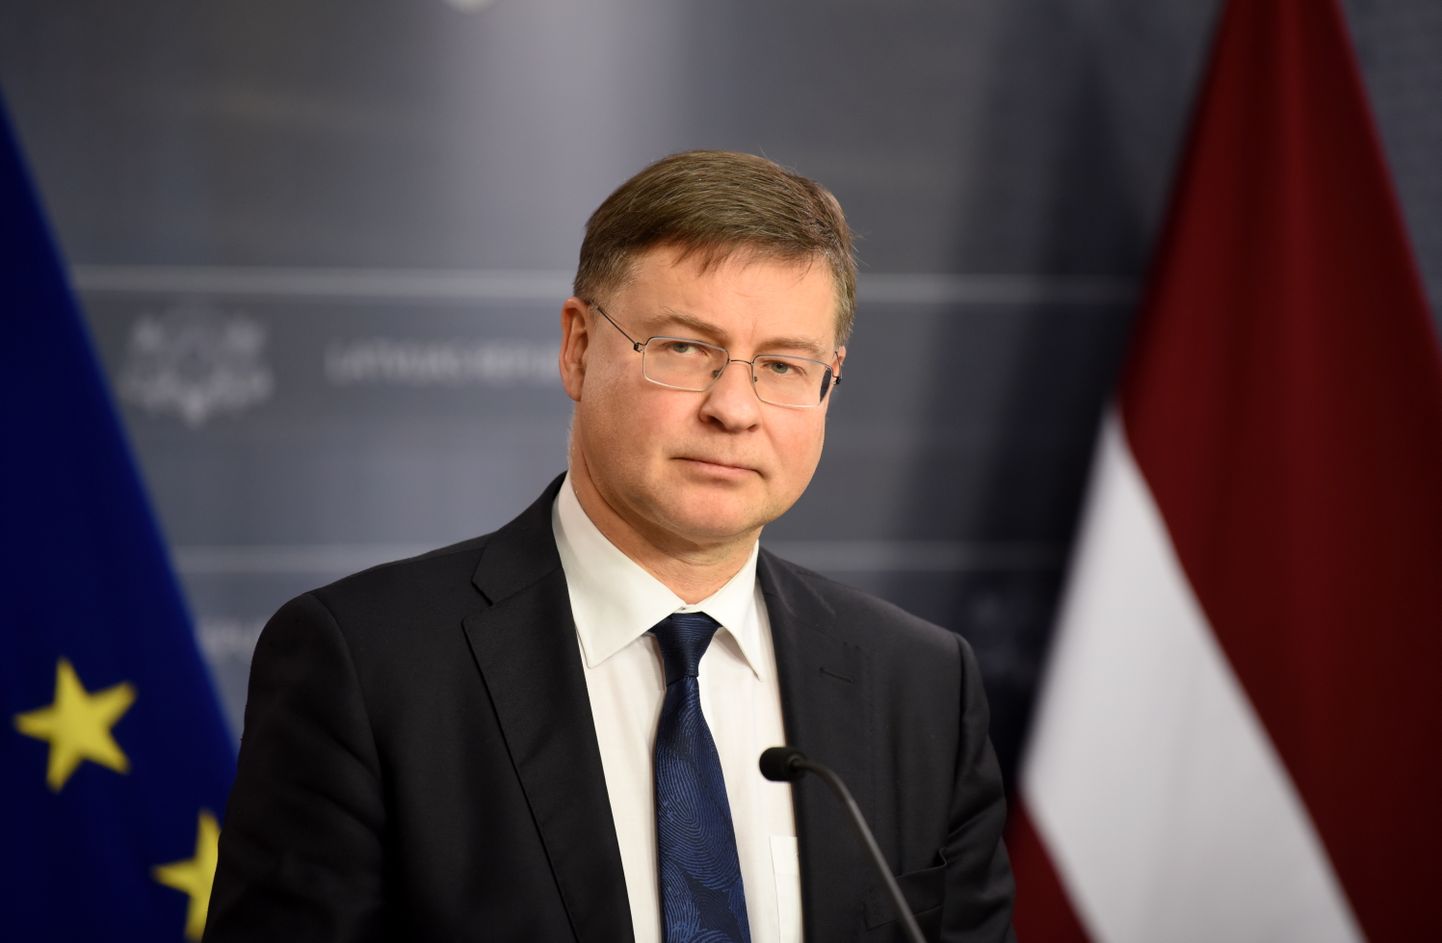 Eiropas Komisijas priekšsēdētājas izpildvietnieks Valdis Dombrovskis piedalās preses konferencē pēc tikšanās ar Ministru prezidenti, kur apsprieda ES daudzgadu budžeta vidusposma pārskata procesu, nepieciešamību nodrošināt stabilu un paredzamu finansiālo atbalstu Ukrainai.